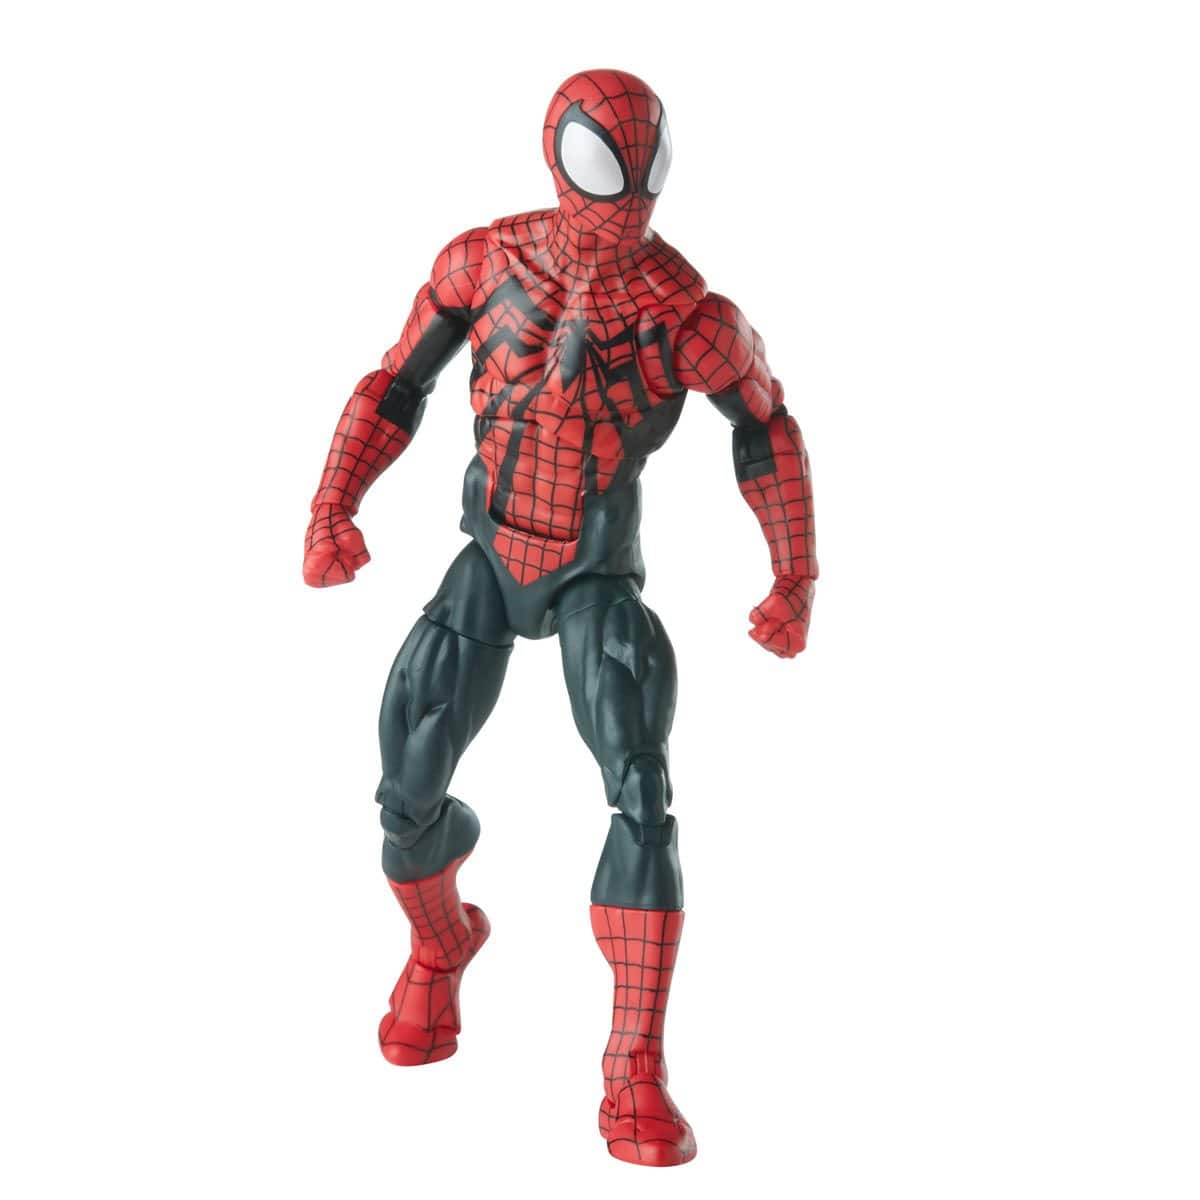 Spider-Man Retro Marvel Legends Ben Reilly Spider-Man 6-Inch Action Figure Walking